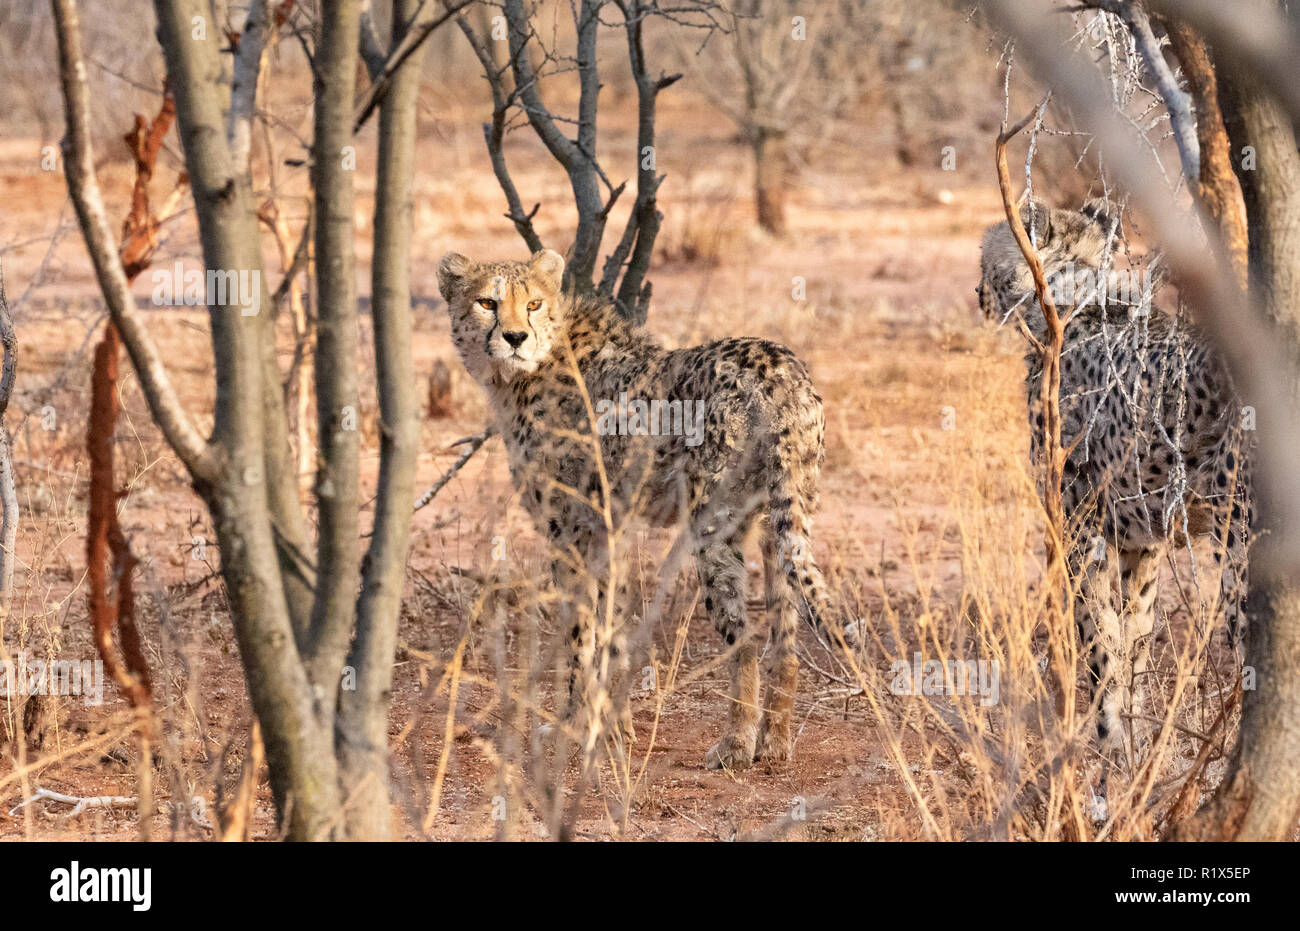 Le guépard Acinonyx jubatus, deux guépards chasse, fondation Africat Okonjima, réserve naturelle, la Namibie Afrique du Sud Banque D'Images